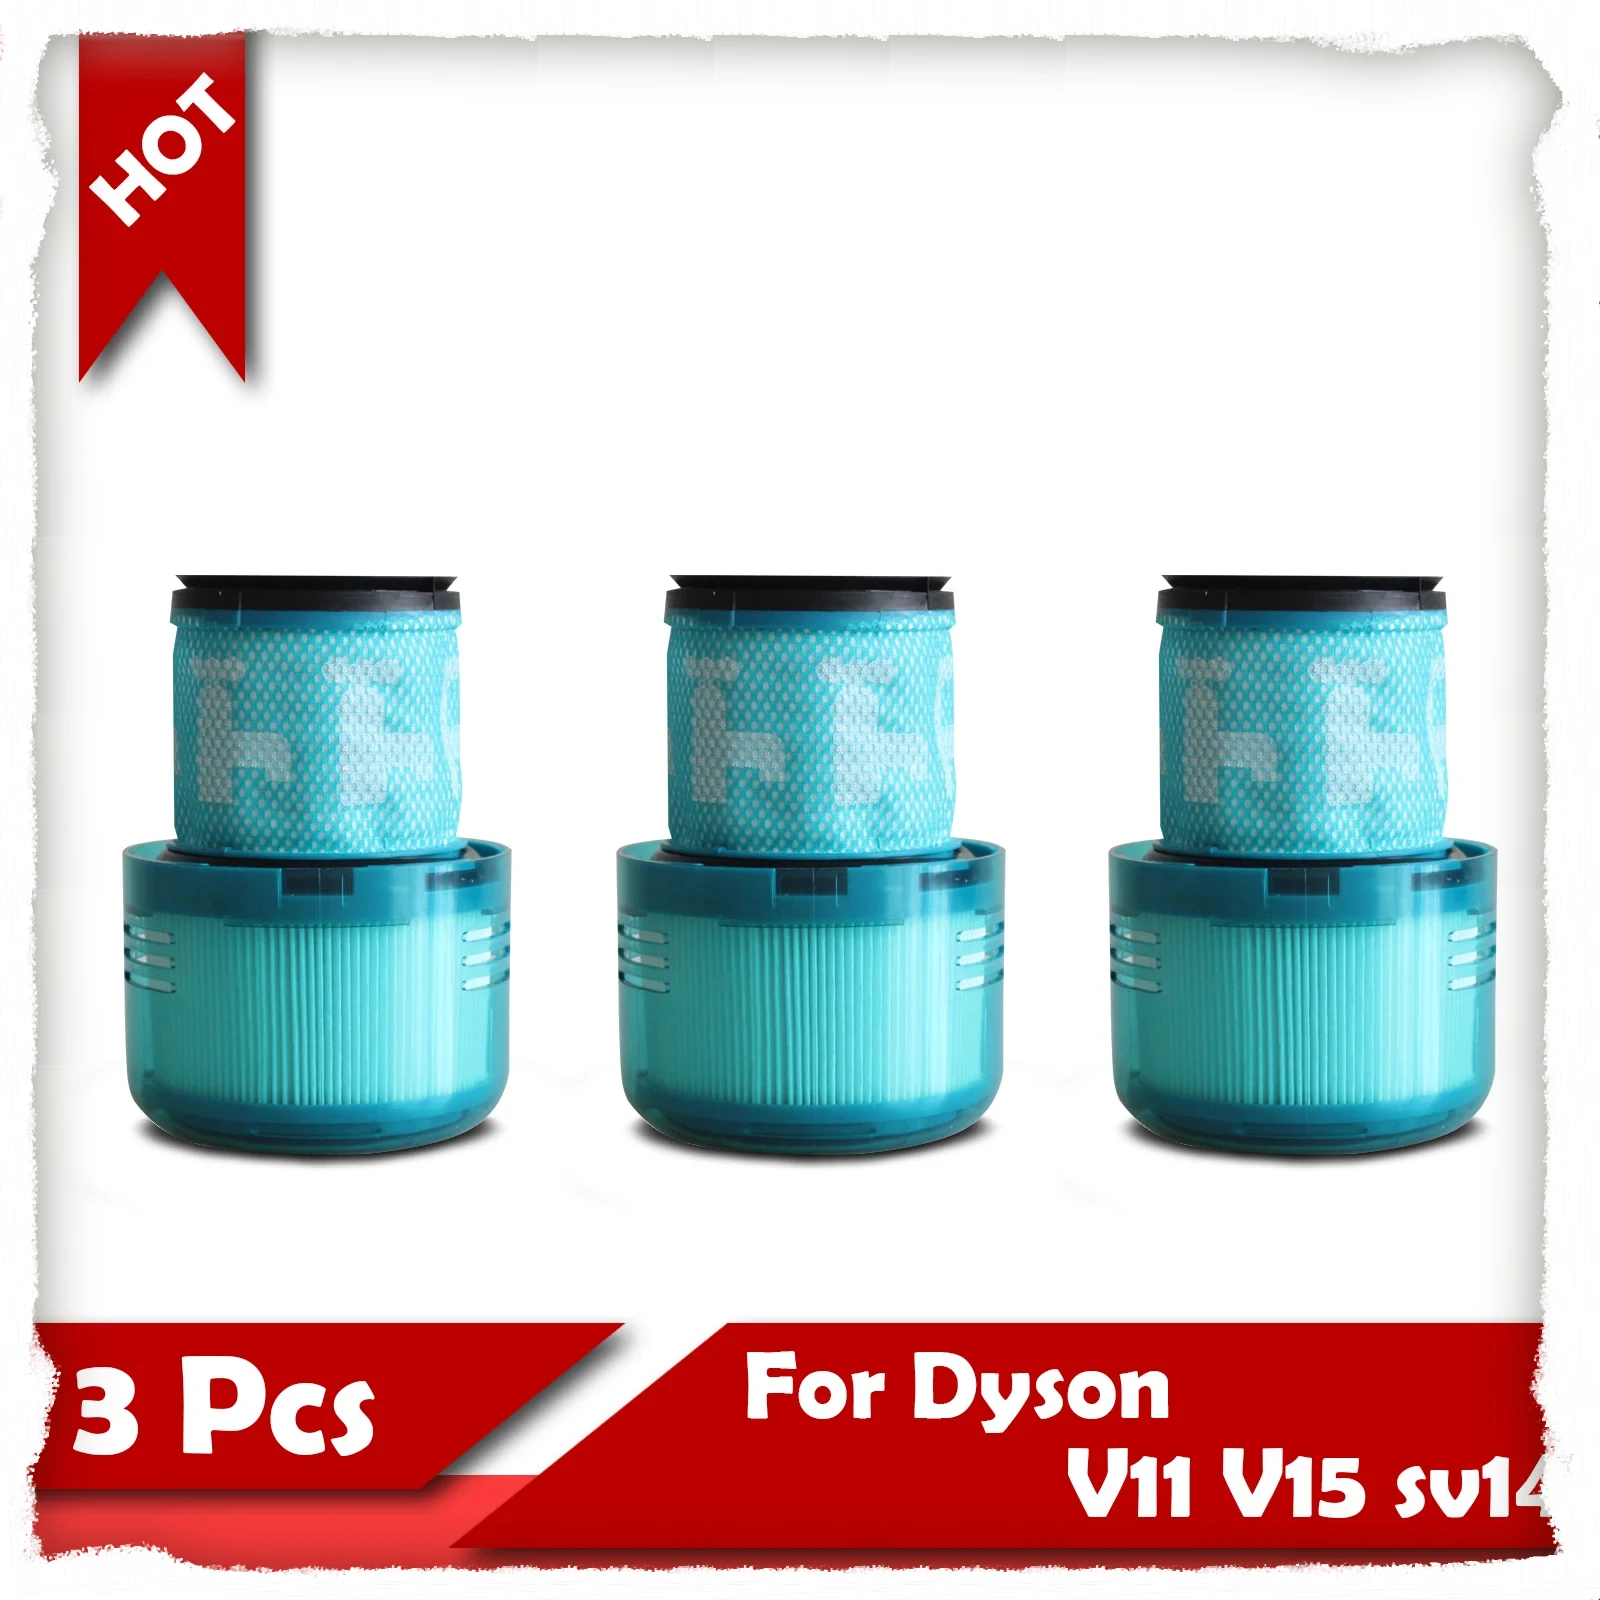 3 шт. для HEPA-фильтра Dyson V11 V15 SV14, совместимого с вакуумными сменными фильтрами Dyson